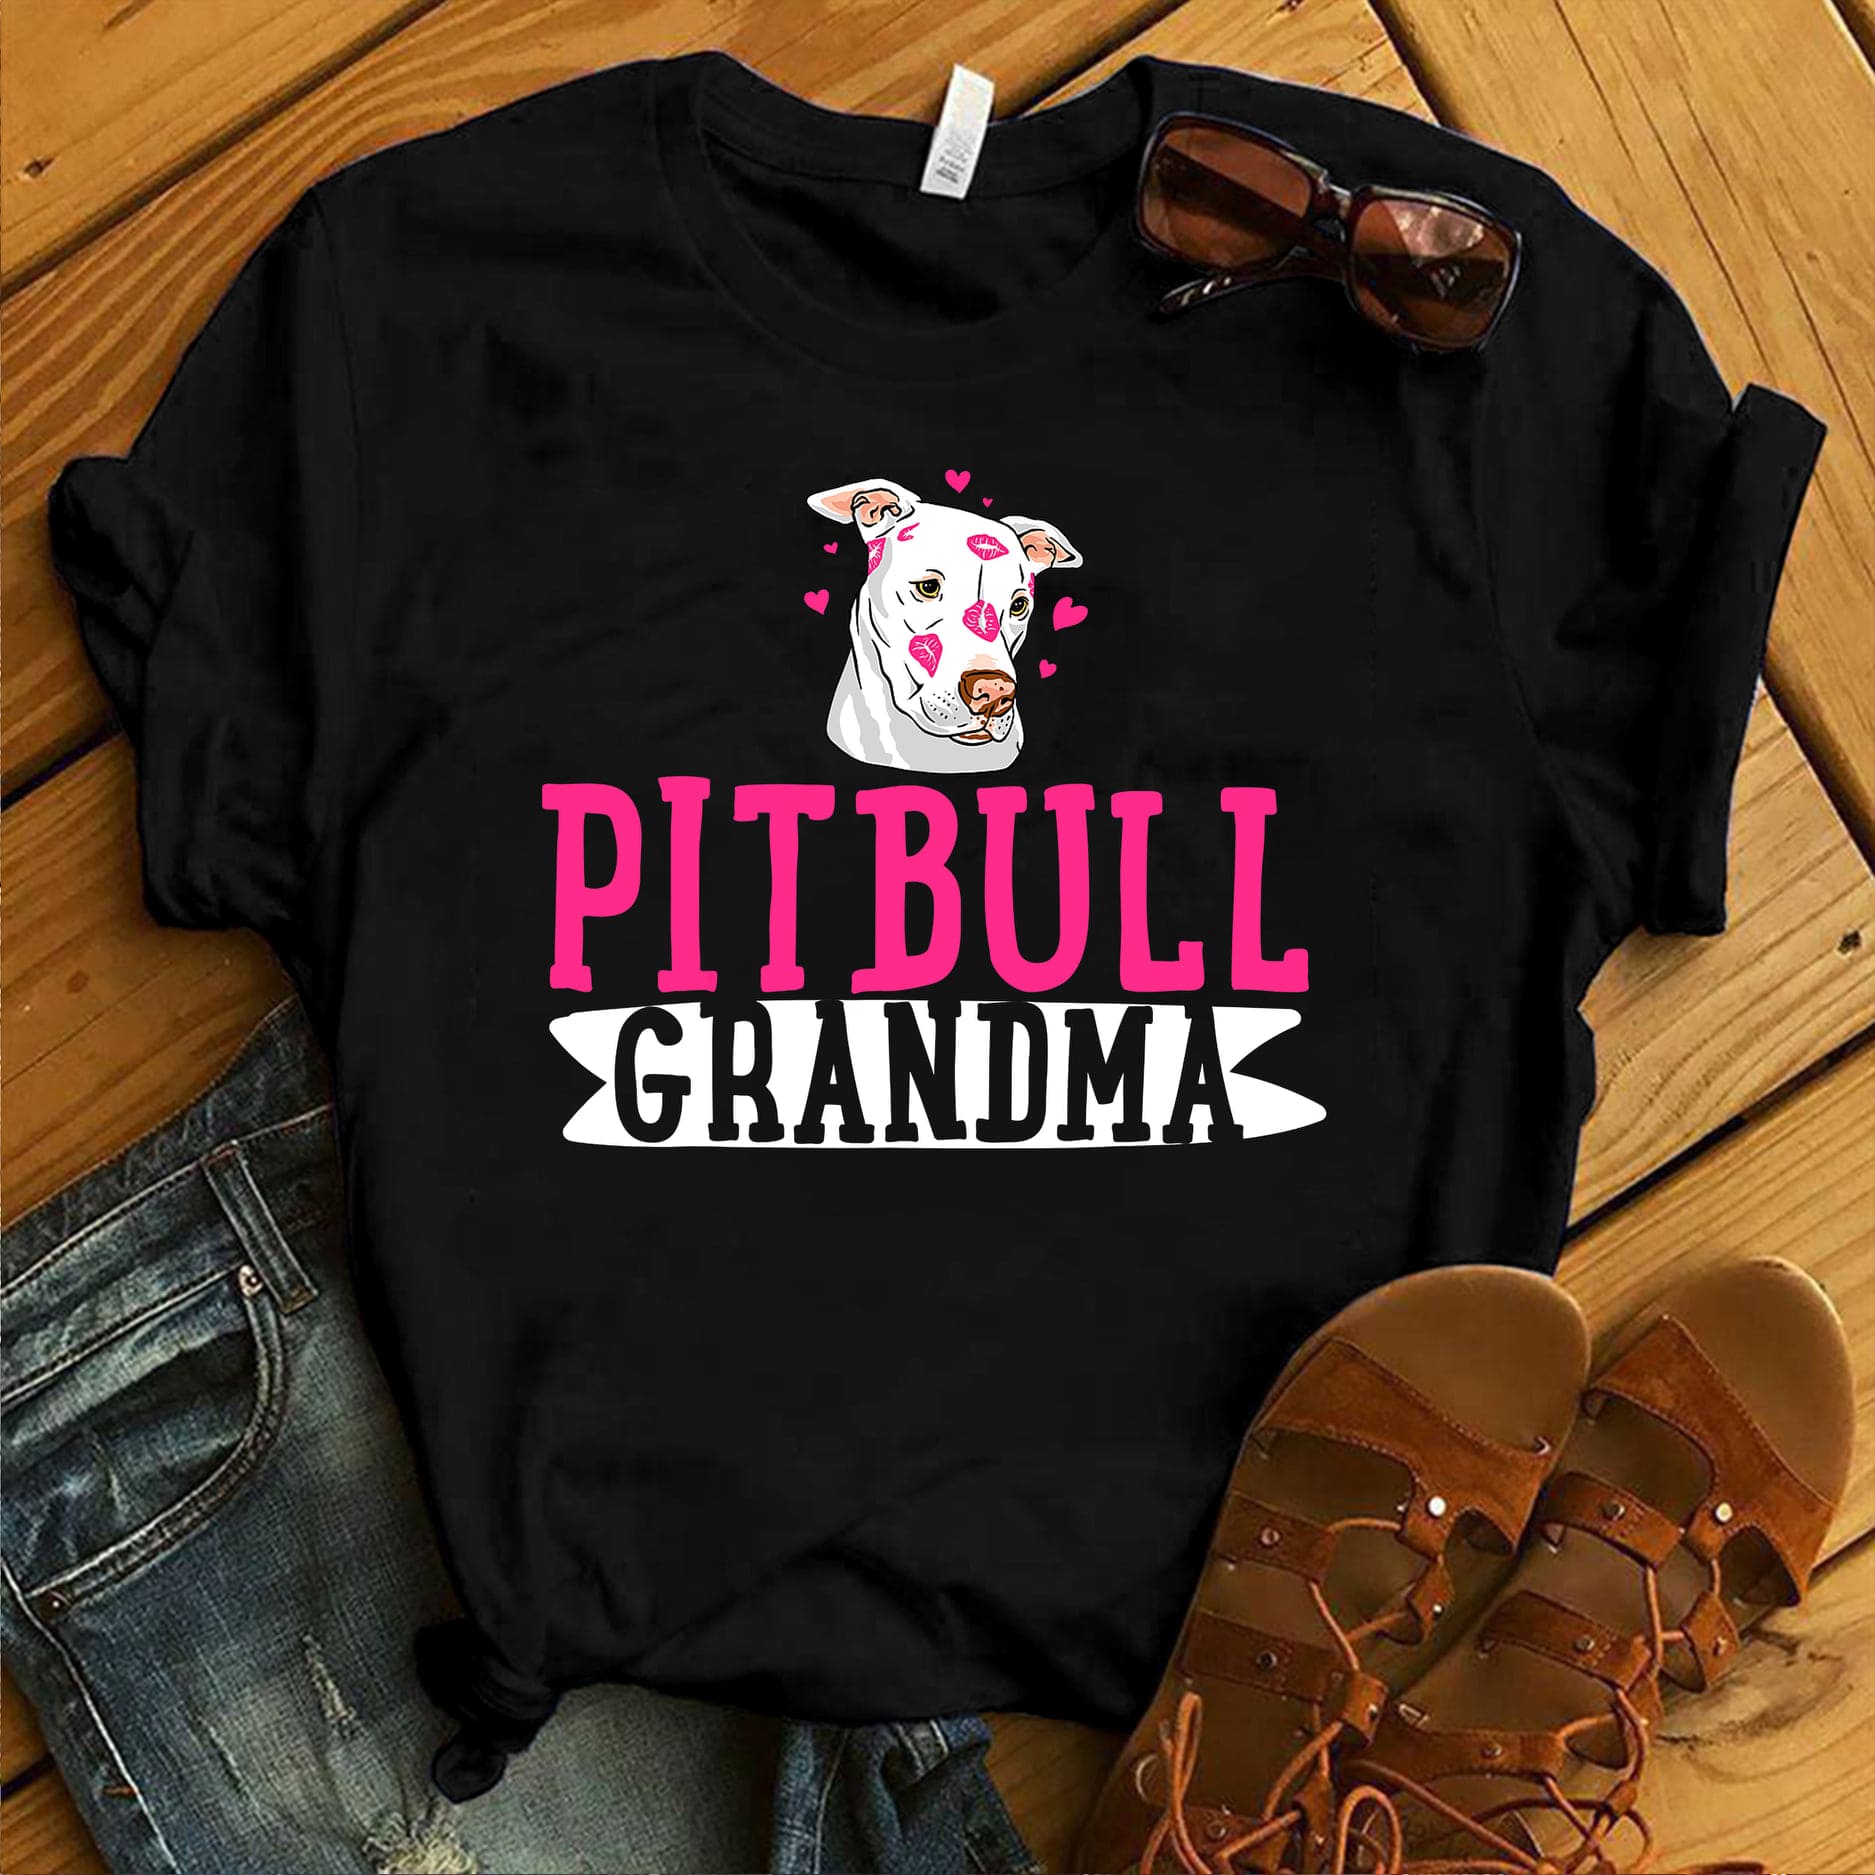 Pitbull grandma - Grandma loves Pitbull, gift for pitbull owner